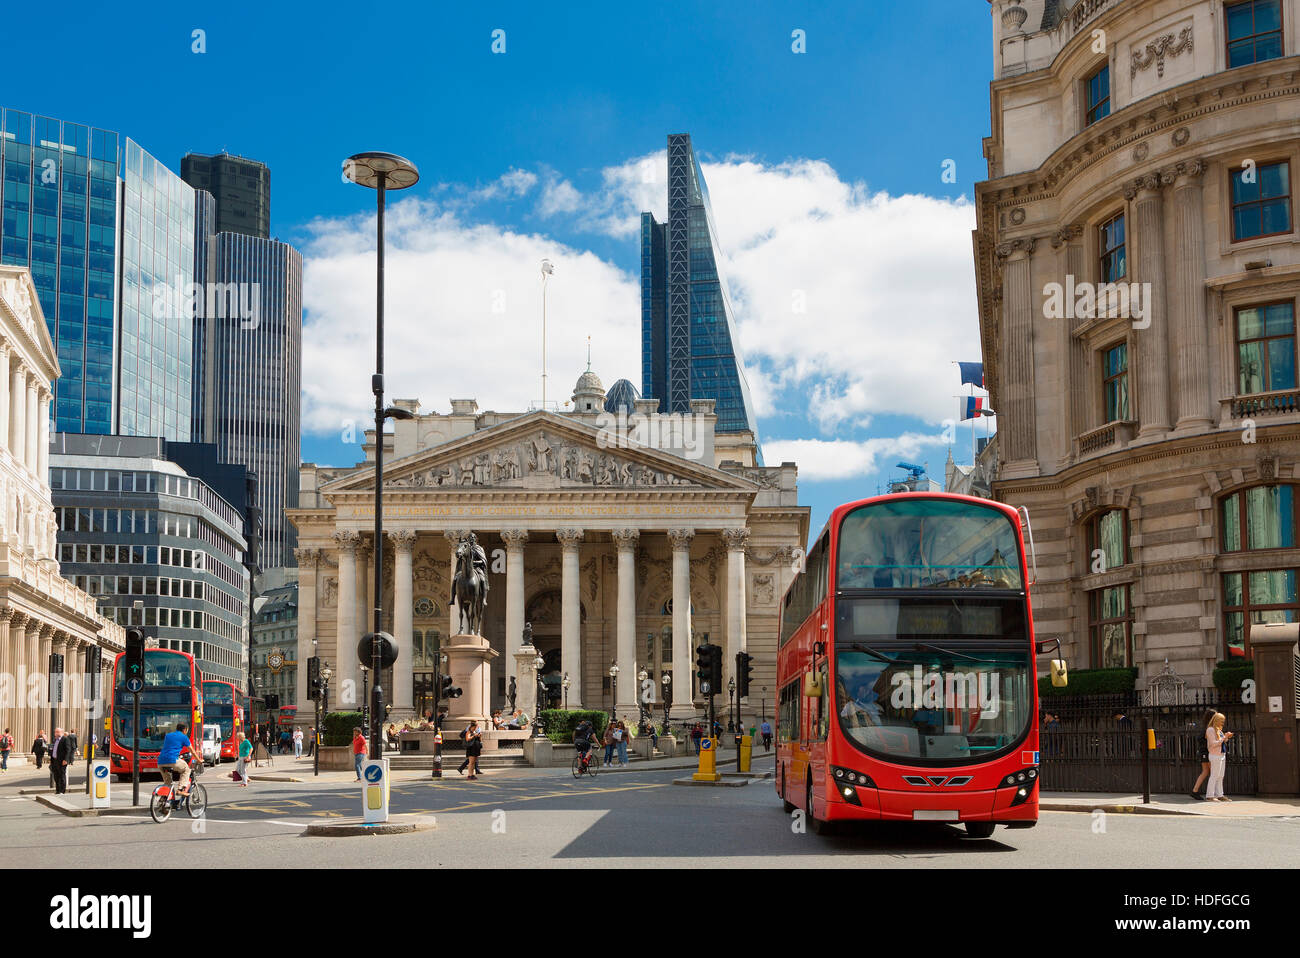 Londres, UK - Vue du coeur financier britannique, la Banque d'Angleterre et Royal Exchange. Banque D'Images